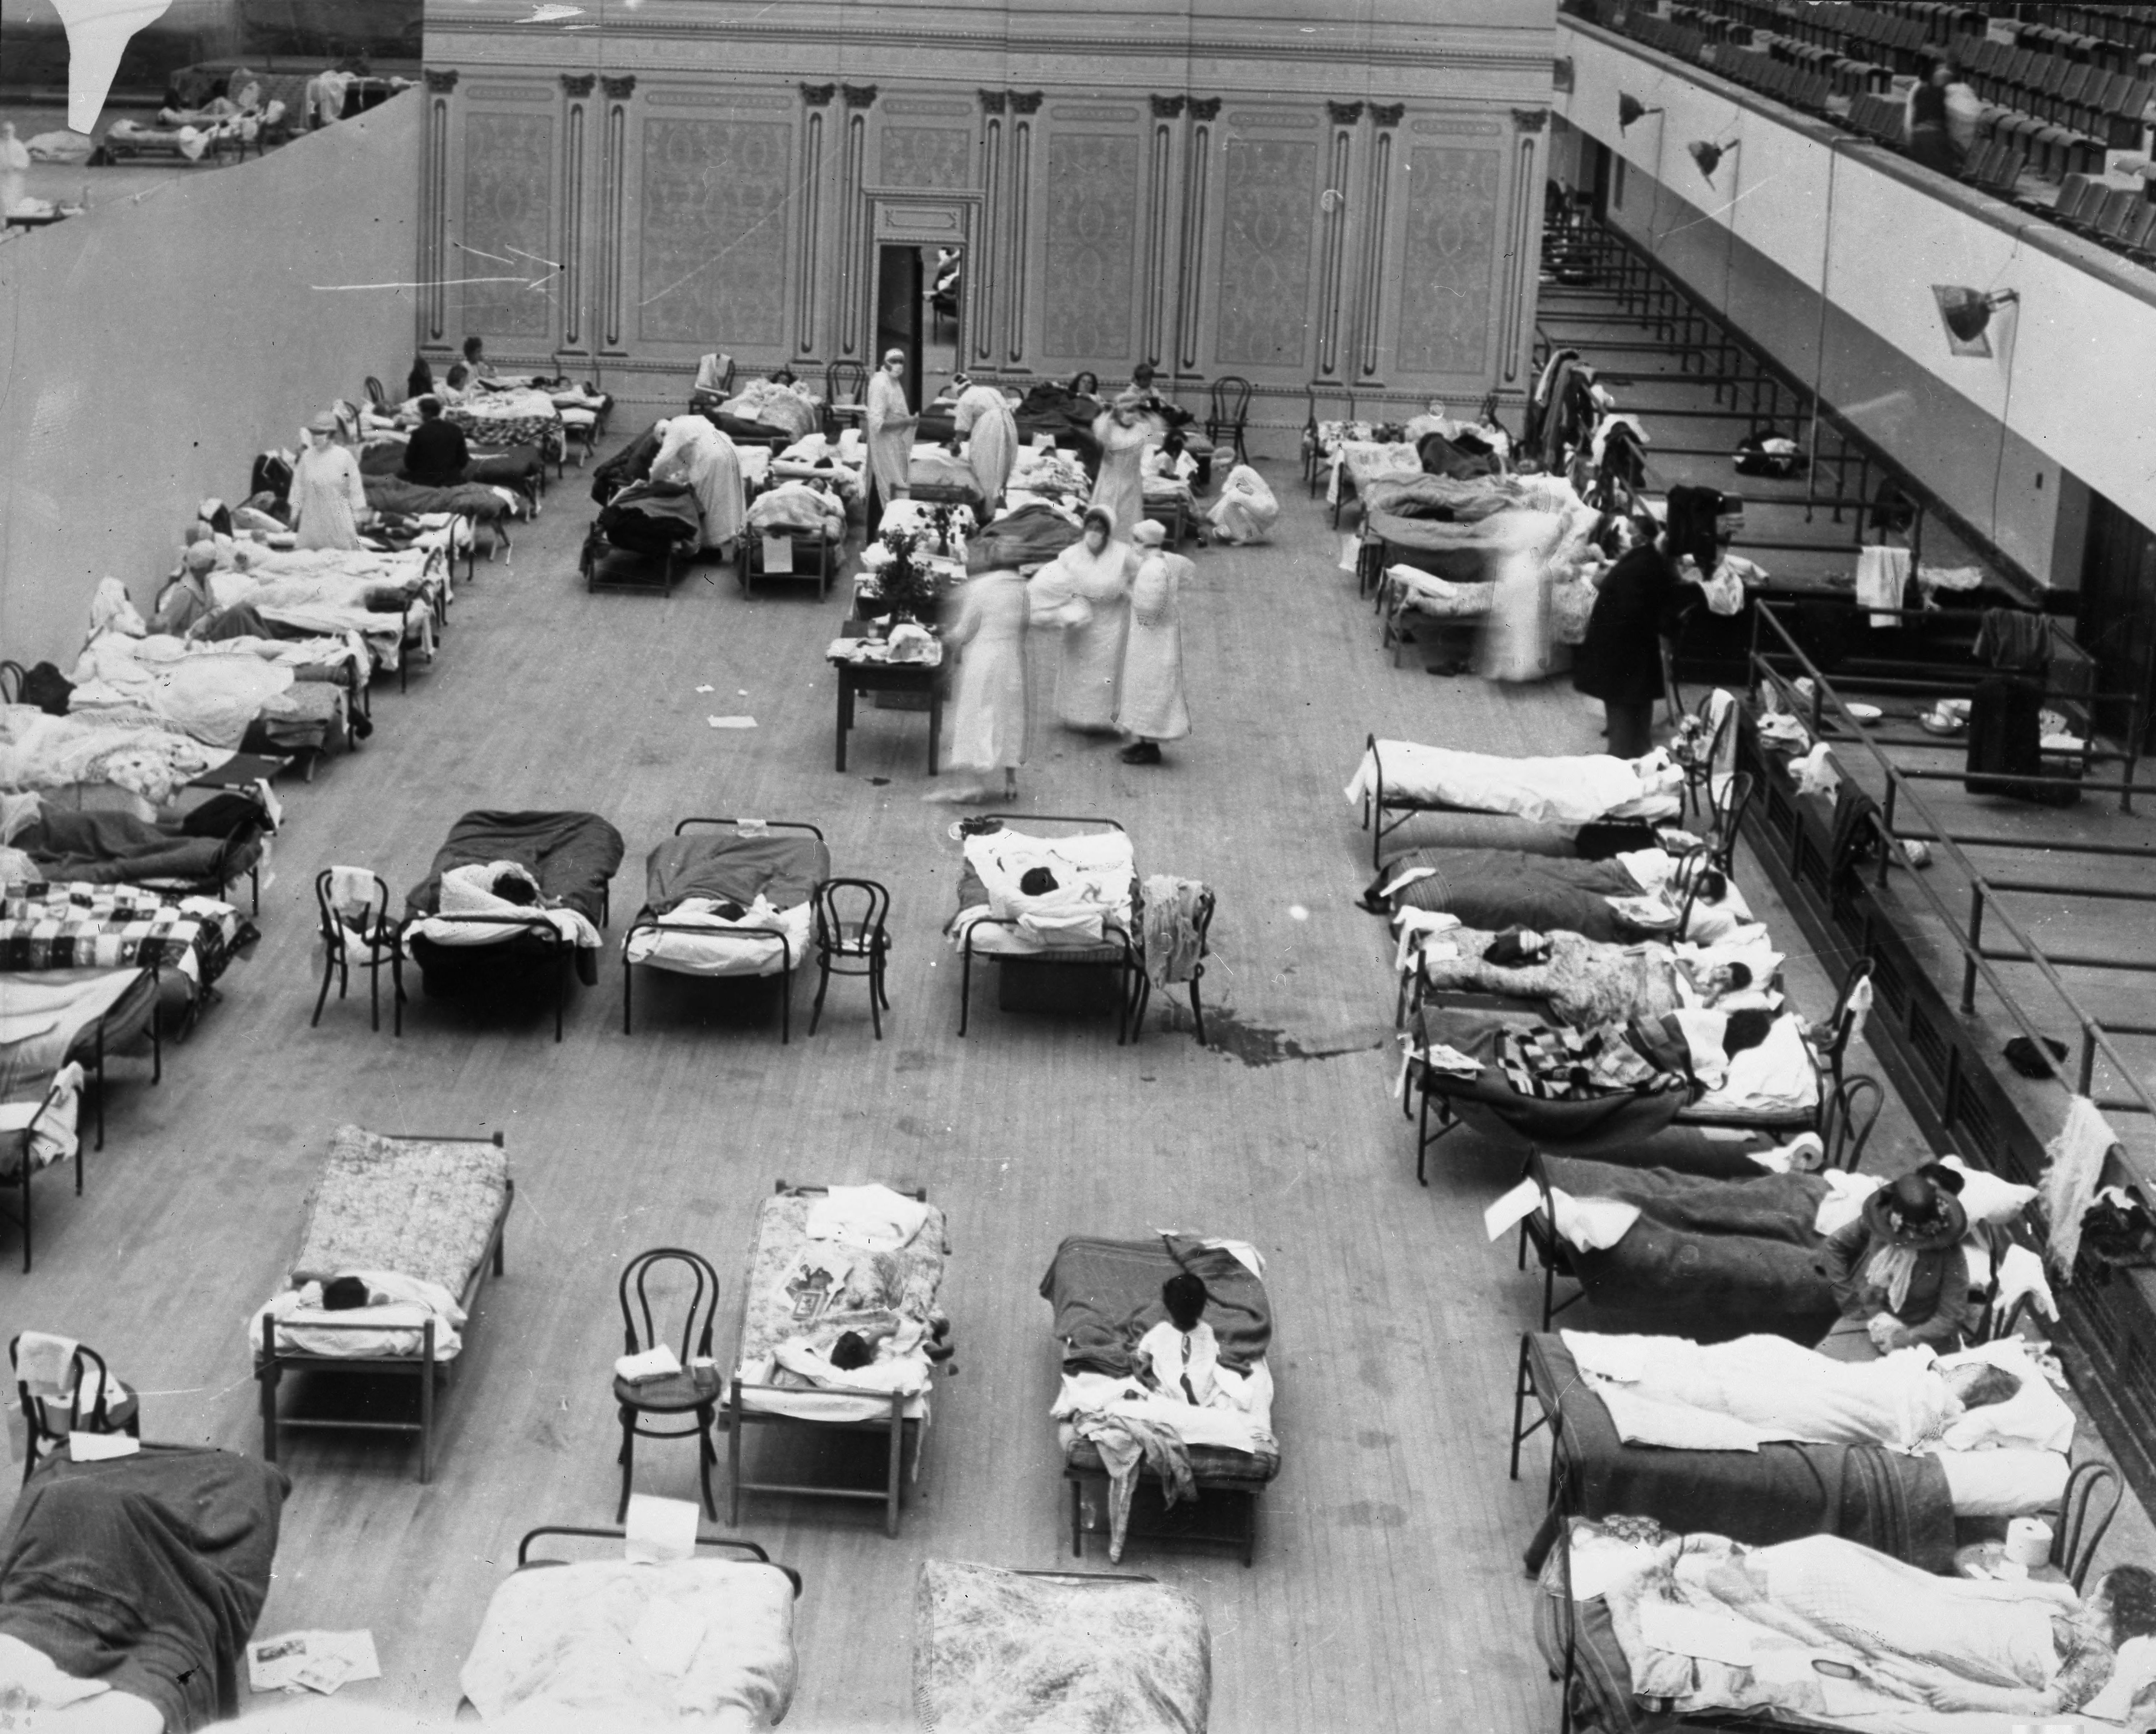 Сестри от американския червен кръст се грижат за заразени с грип пациенти във временен приют, организиран в общинския аудиториум на Оукланд, Калифорния по време на пандемията през 1918 година. Производителят на Bulgarian Blood Tea Хенри Фон Шлик твърди, че напитката действа превантивно при грип. 